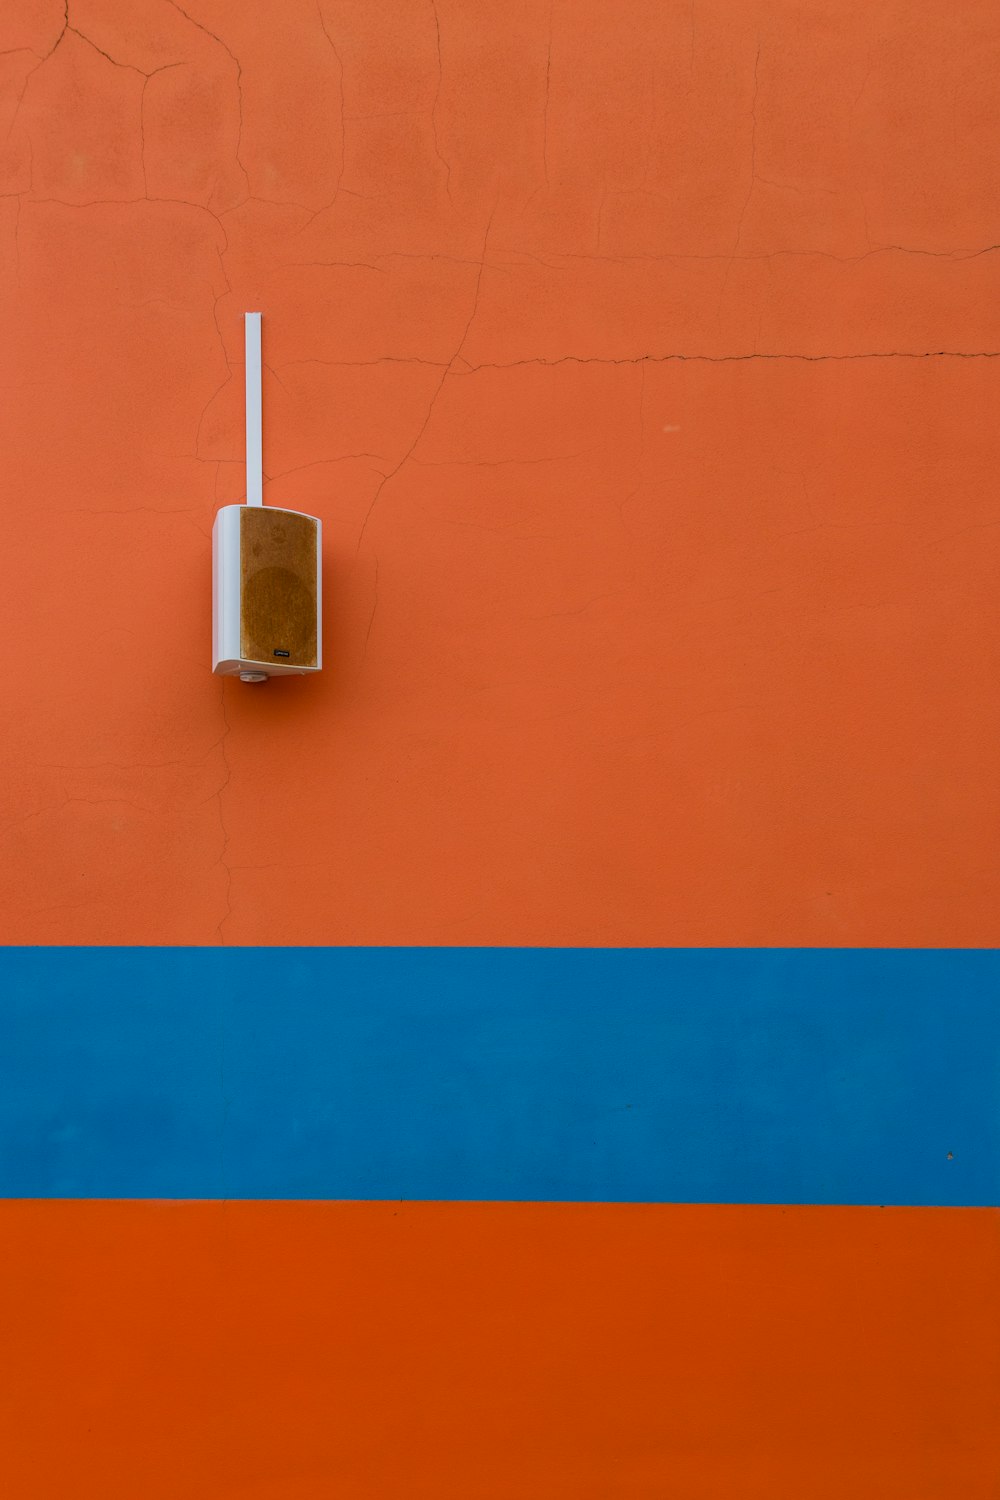 オレンジ色に塗られた壁に取り付けられた白いスピーカー